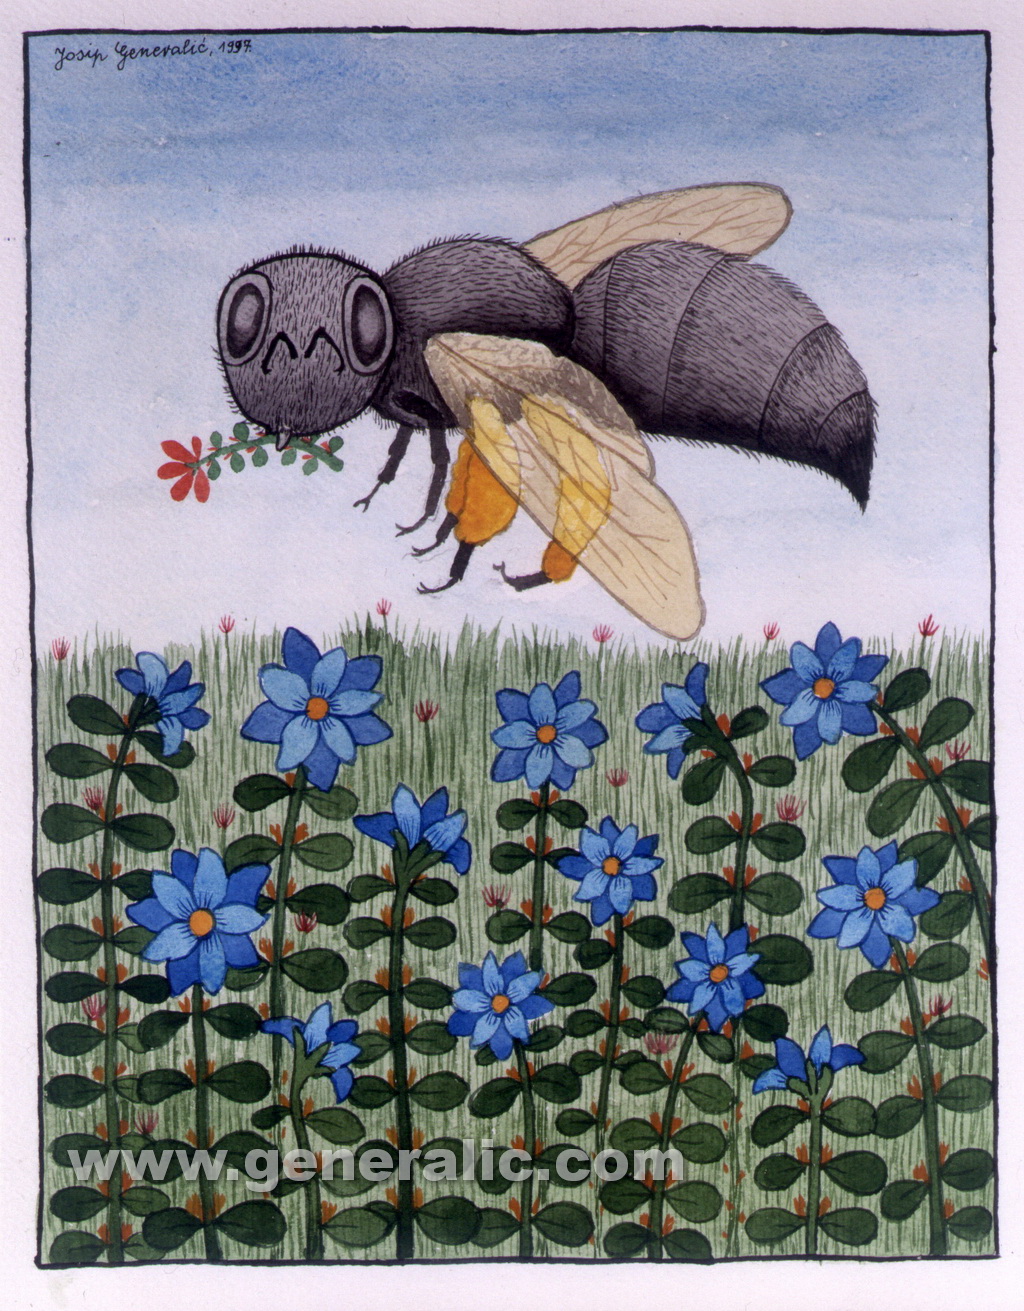 Josip Generalic, 1997, Huge bee, watercolour